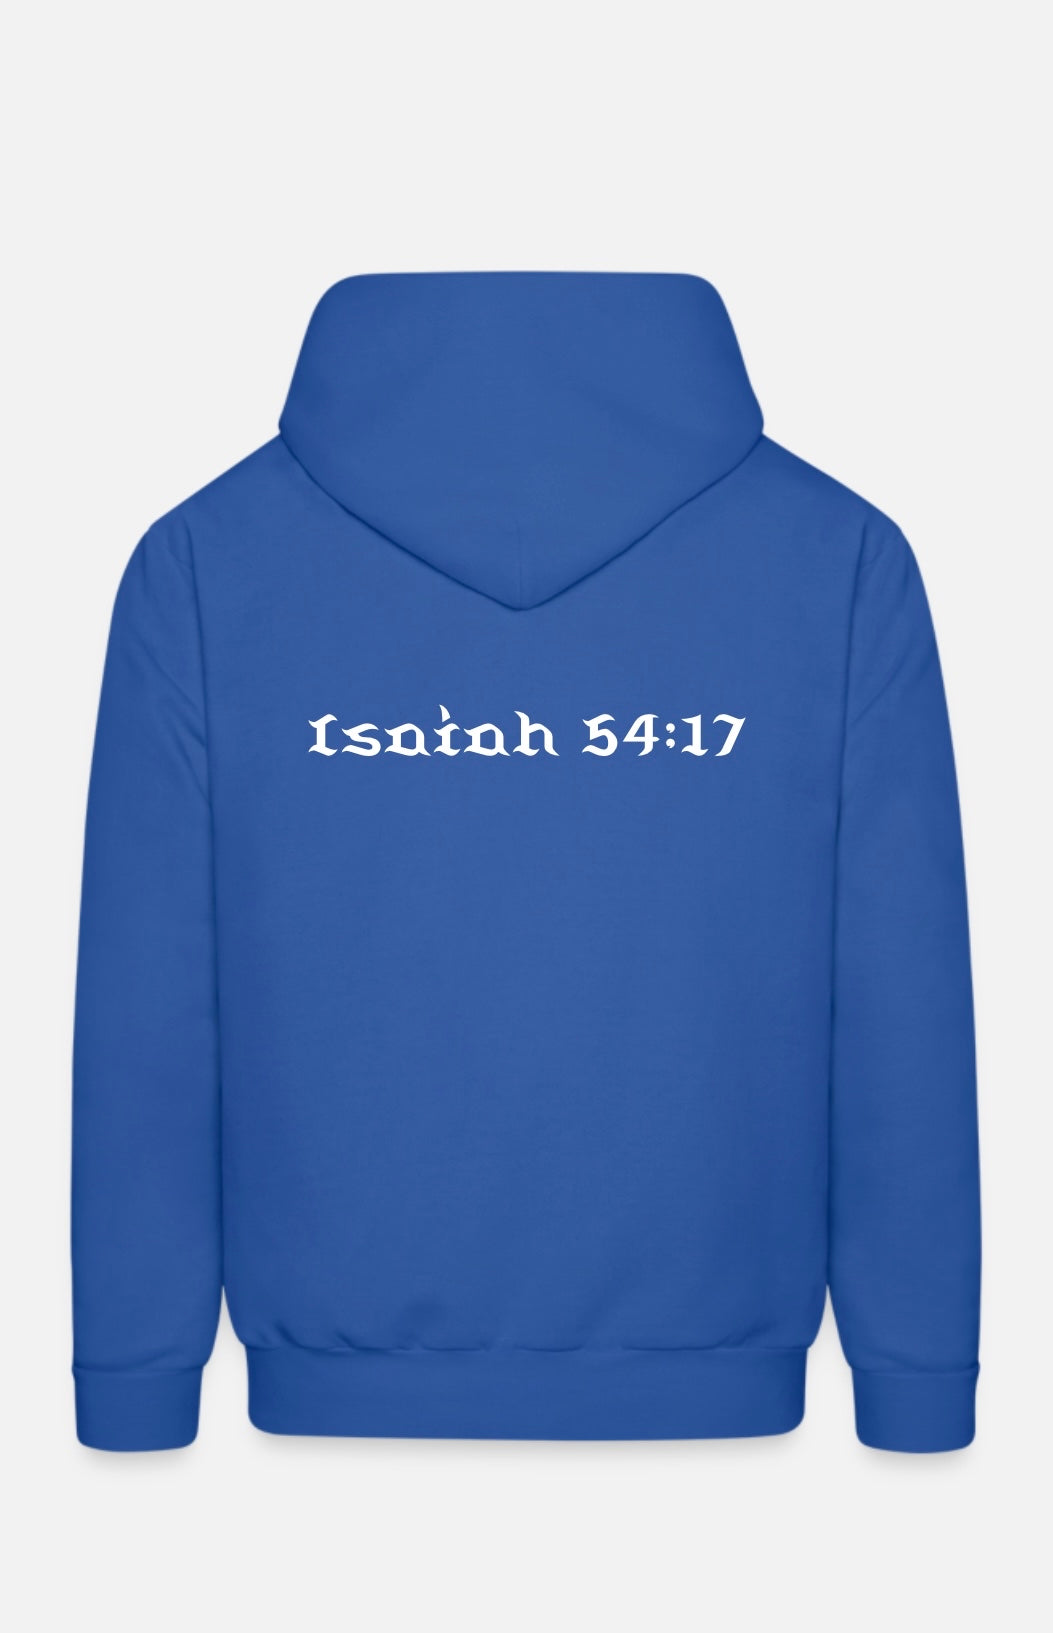 Isaiah 54:17 hoodie